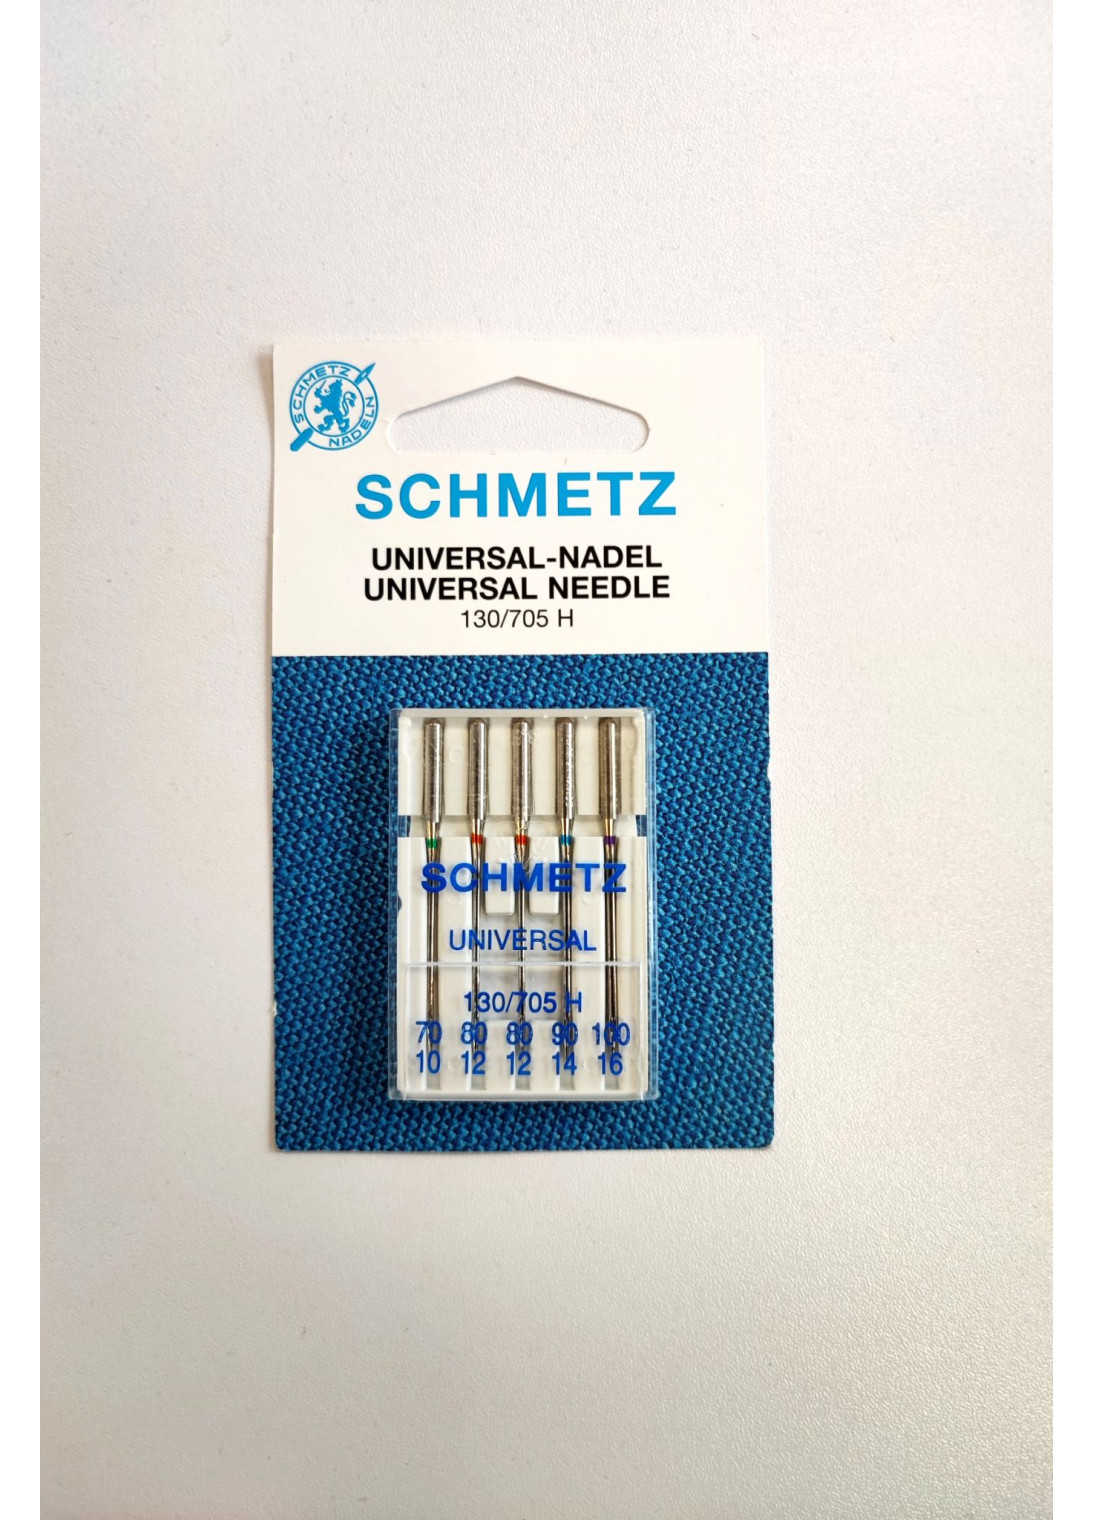 Schmetz - Set 10 Aiguilles Universal Assorties - Coup de coudre